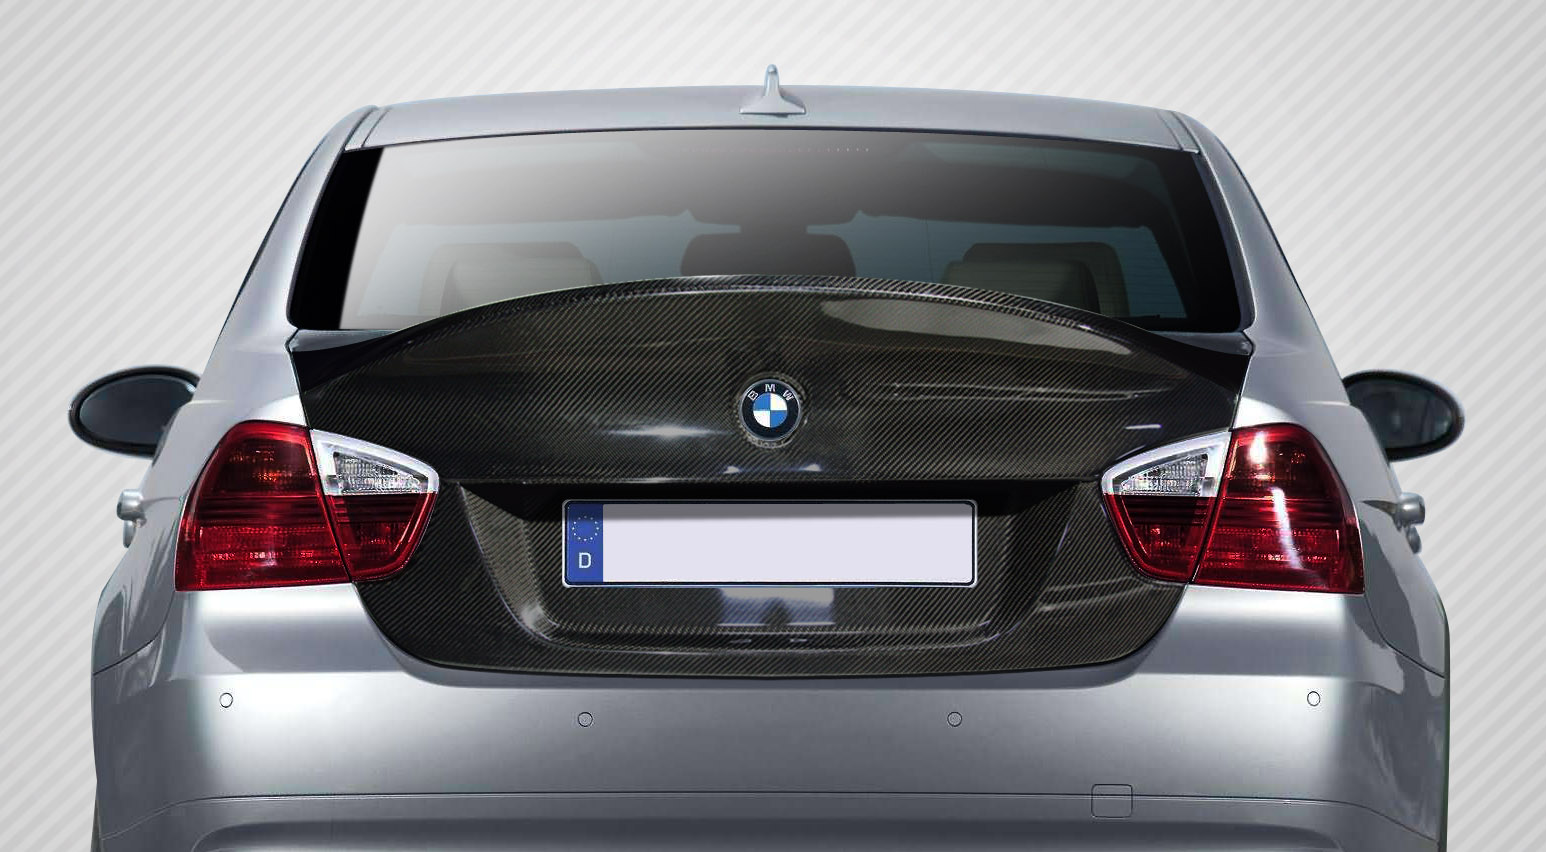 Carbon Fiber Fibre Trunk/Hatch Bodykit for 2008 BMW M3 4DR - BMW 3 Series / M3 E90 4DR Carbon Creations CSL Look Trunk - 1 Piece